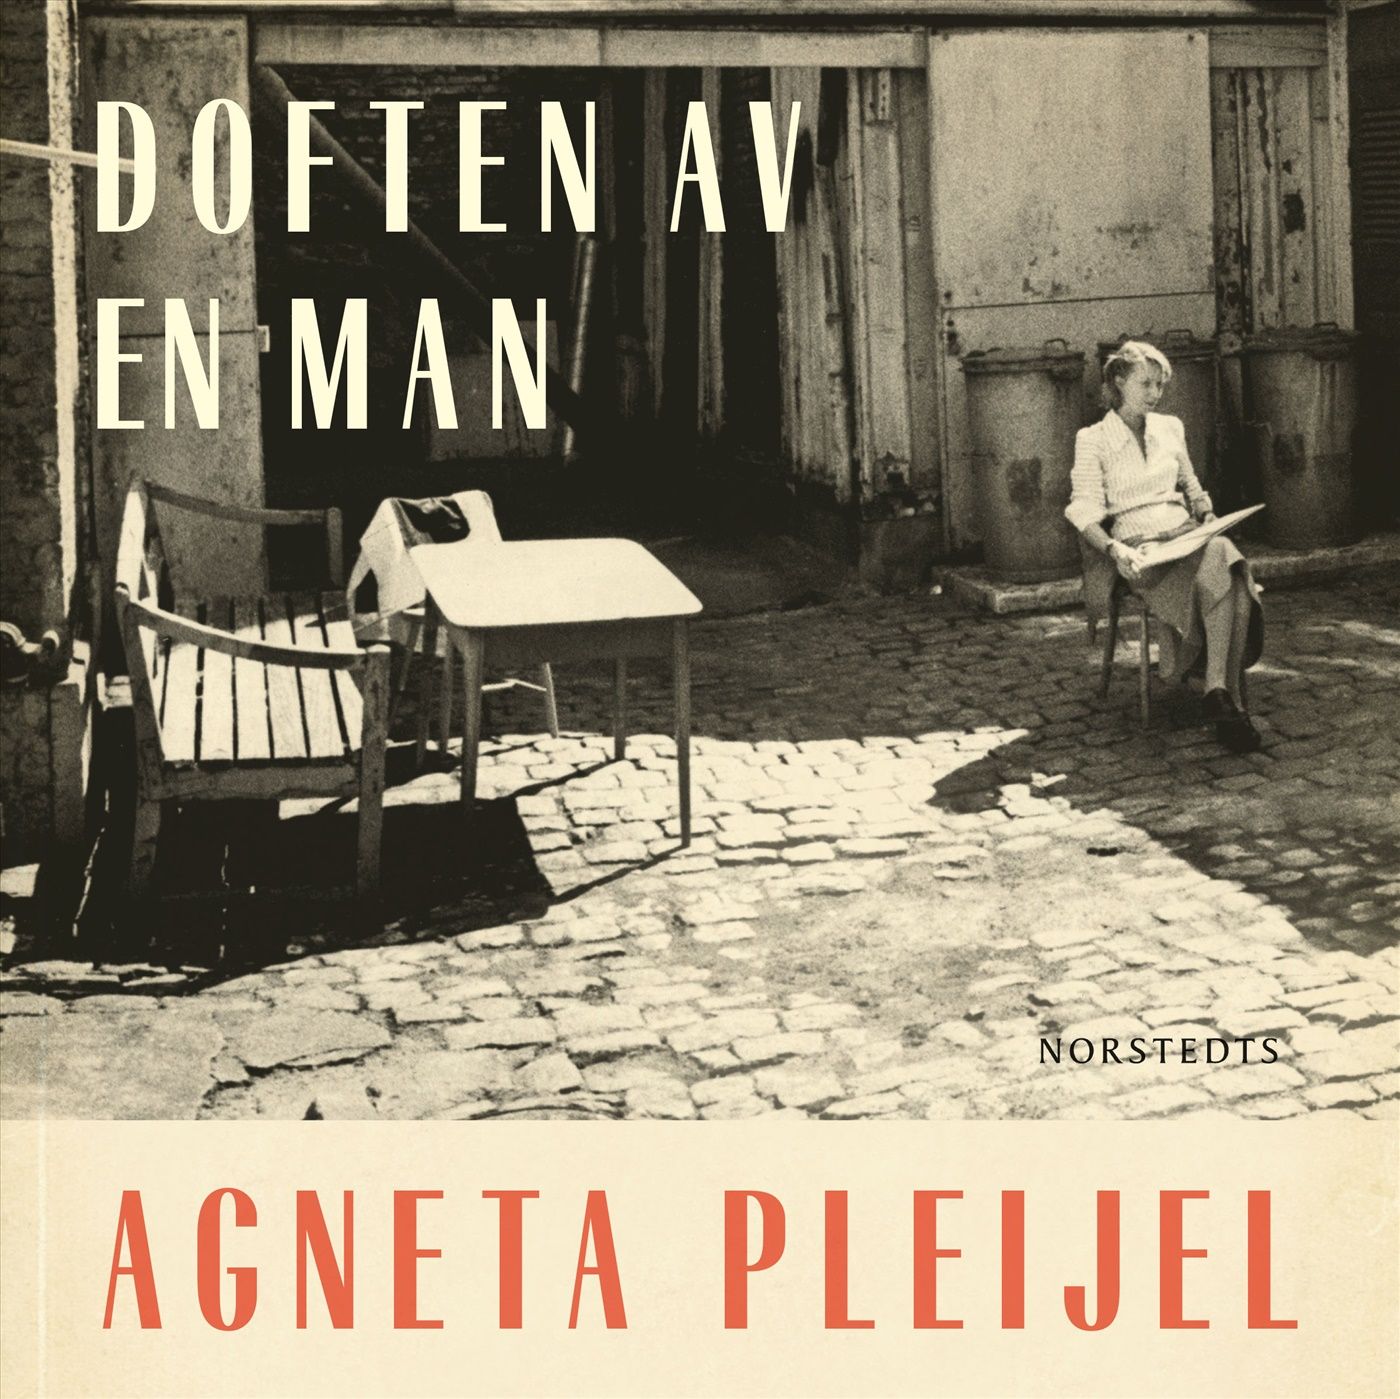 Doften av en man, ljudbok av Agneta Pleijel